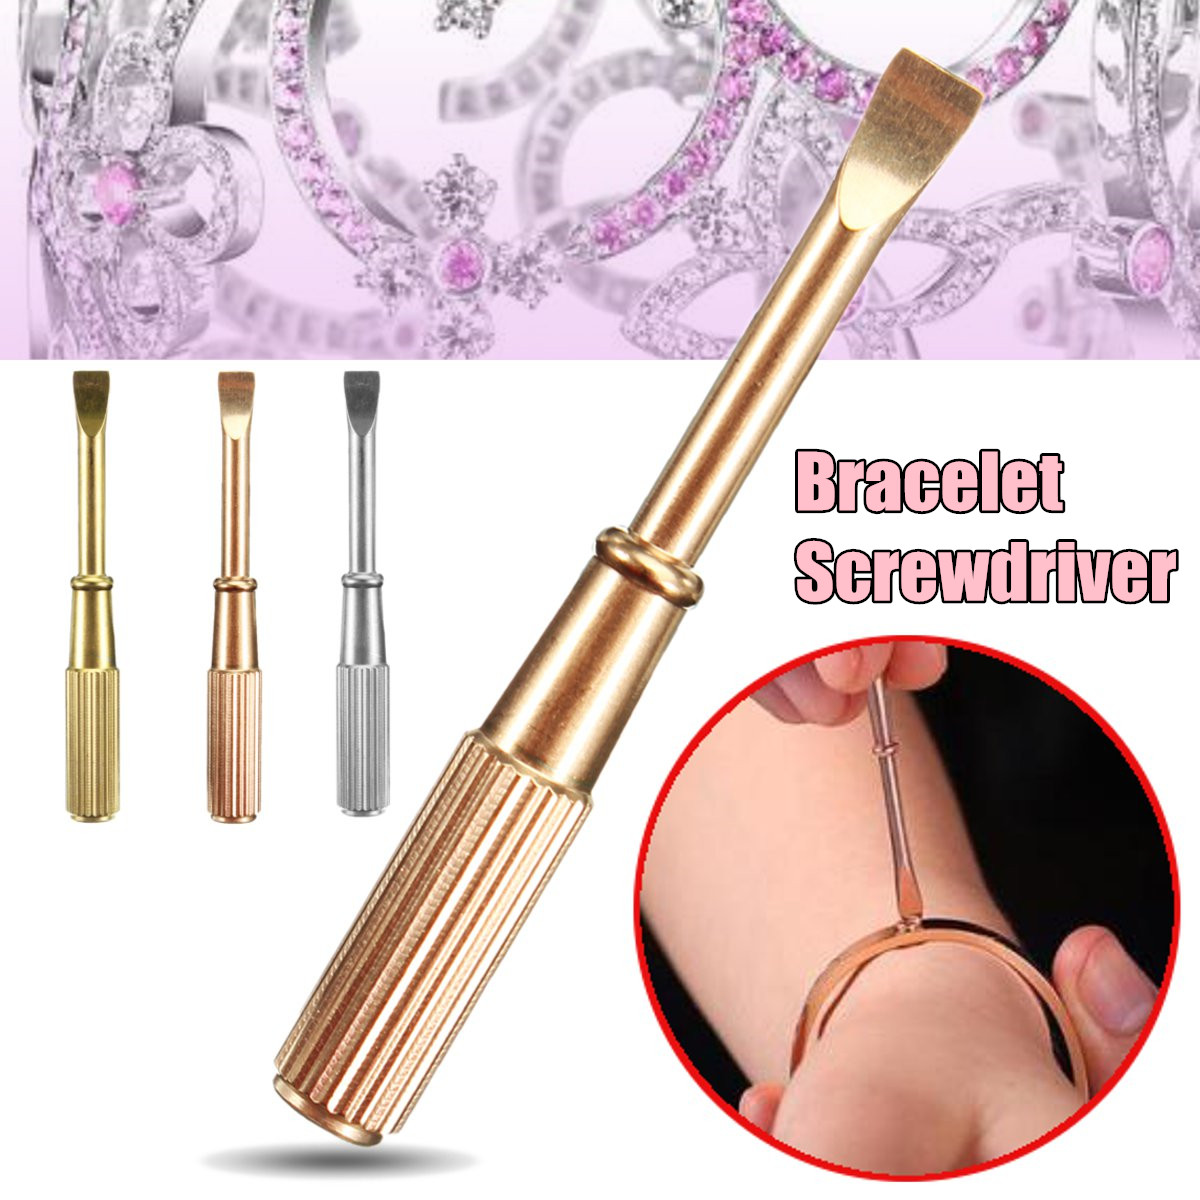 Bracelet-Screwdriver-Bracelet-Repair-Screwdriver-Tool-1263010-1